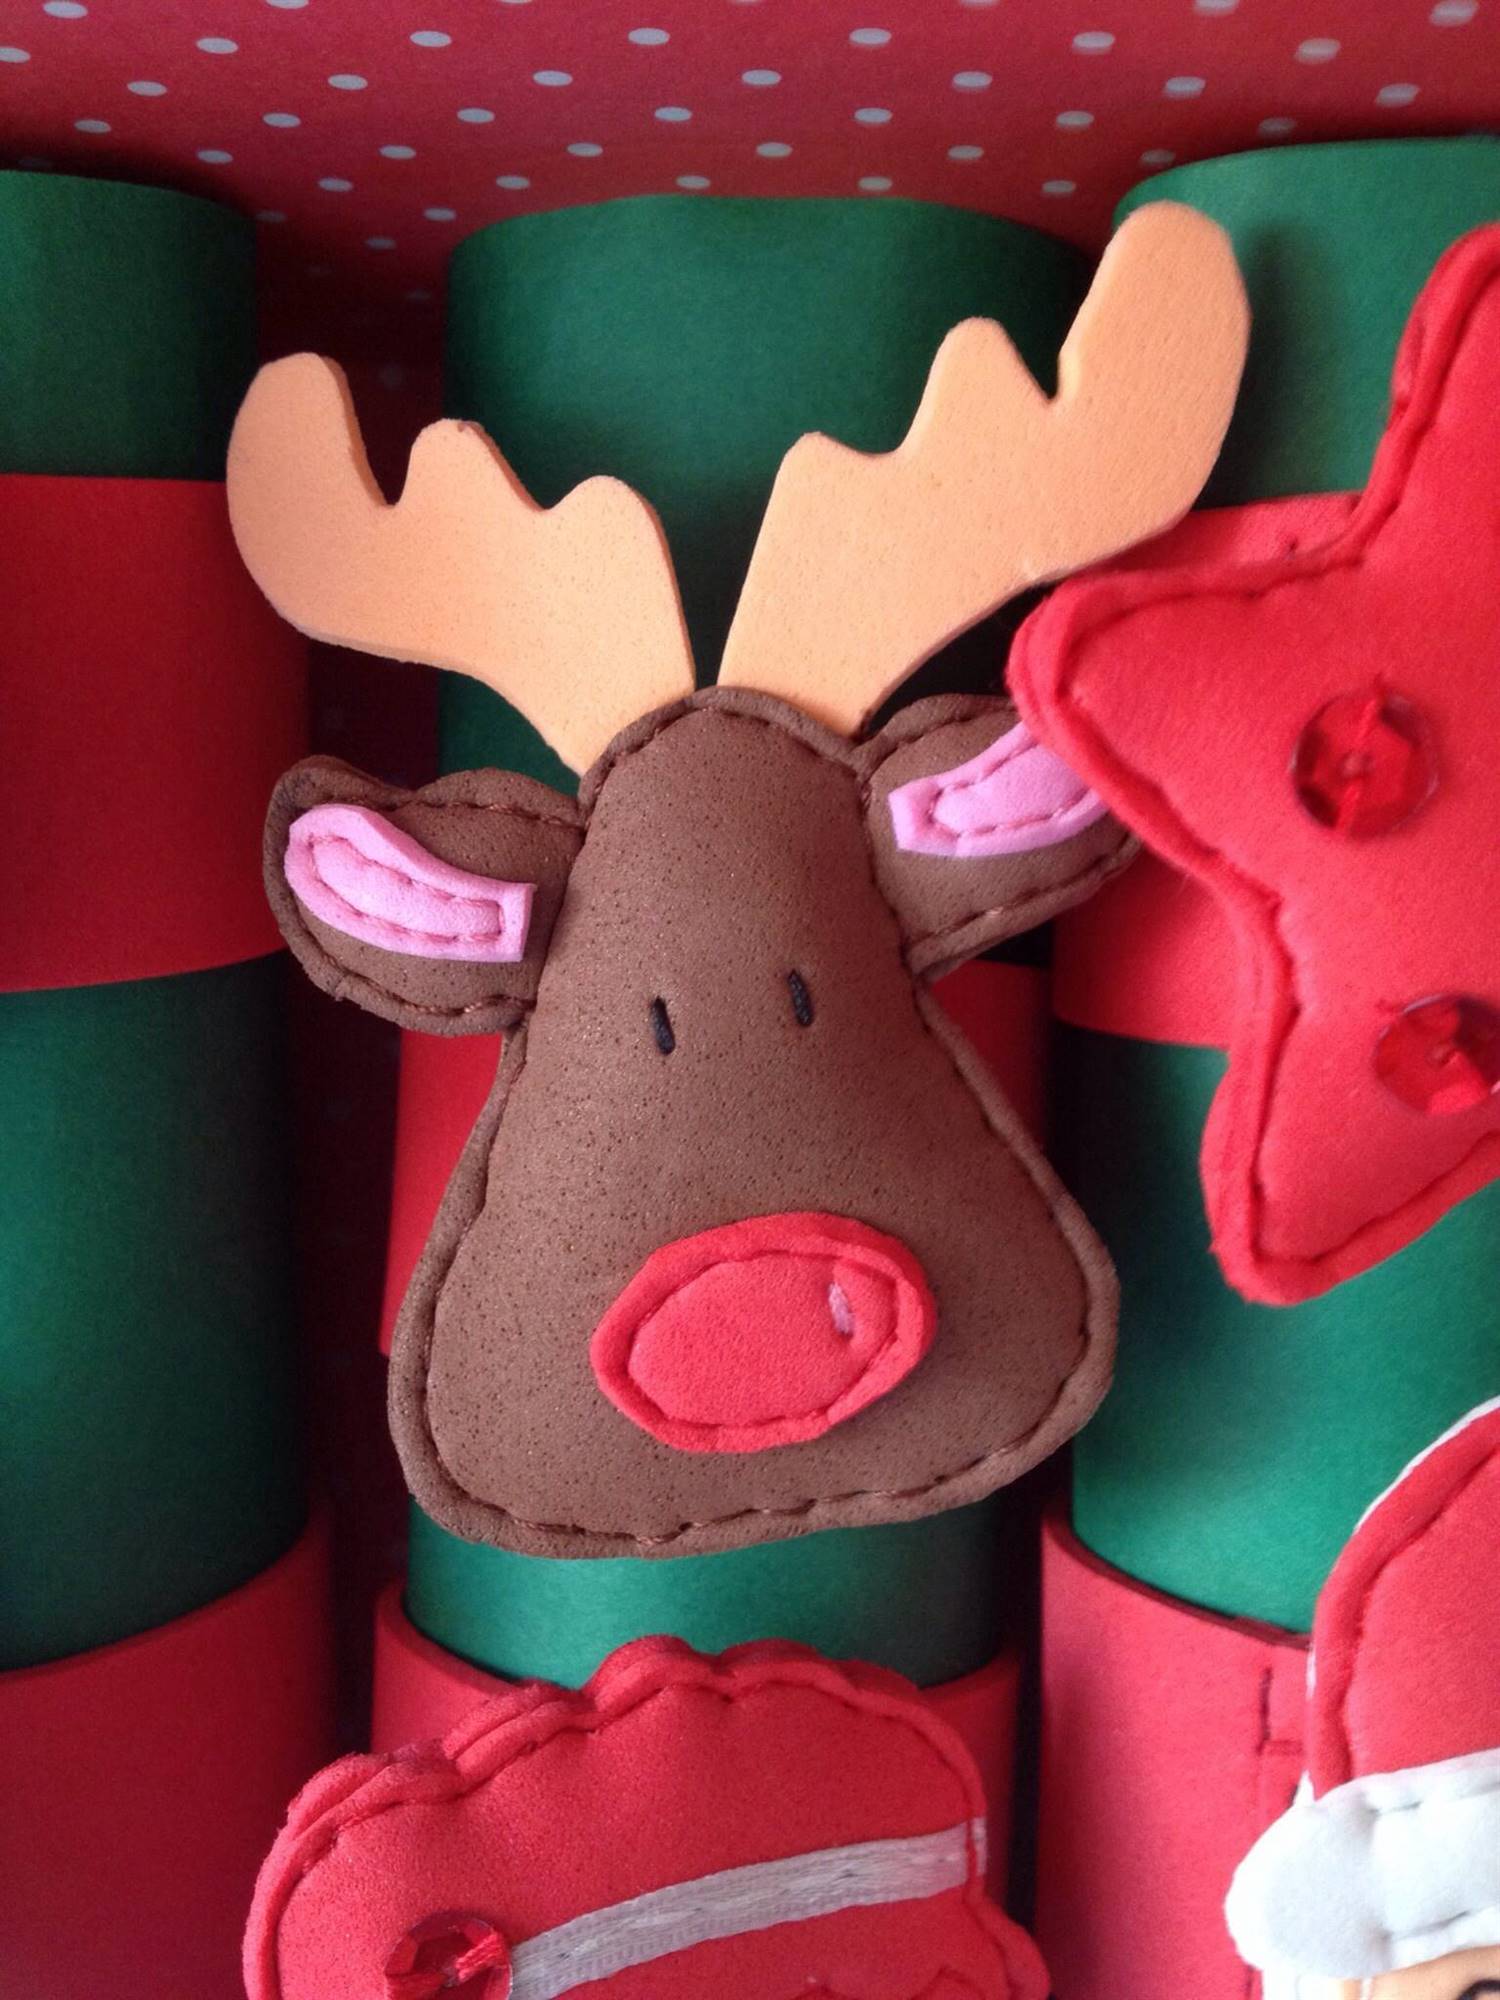 Servilletero navideño hecho con goma eva con forma de reno visto en Pinterest